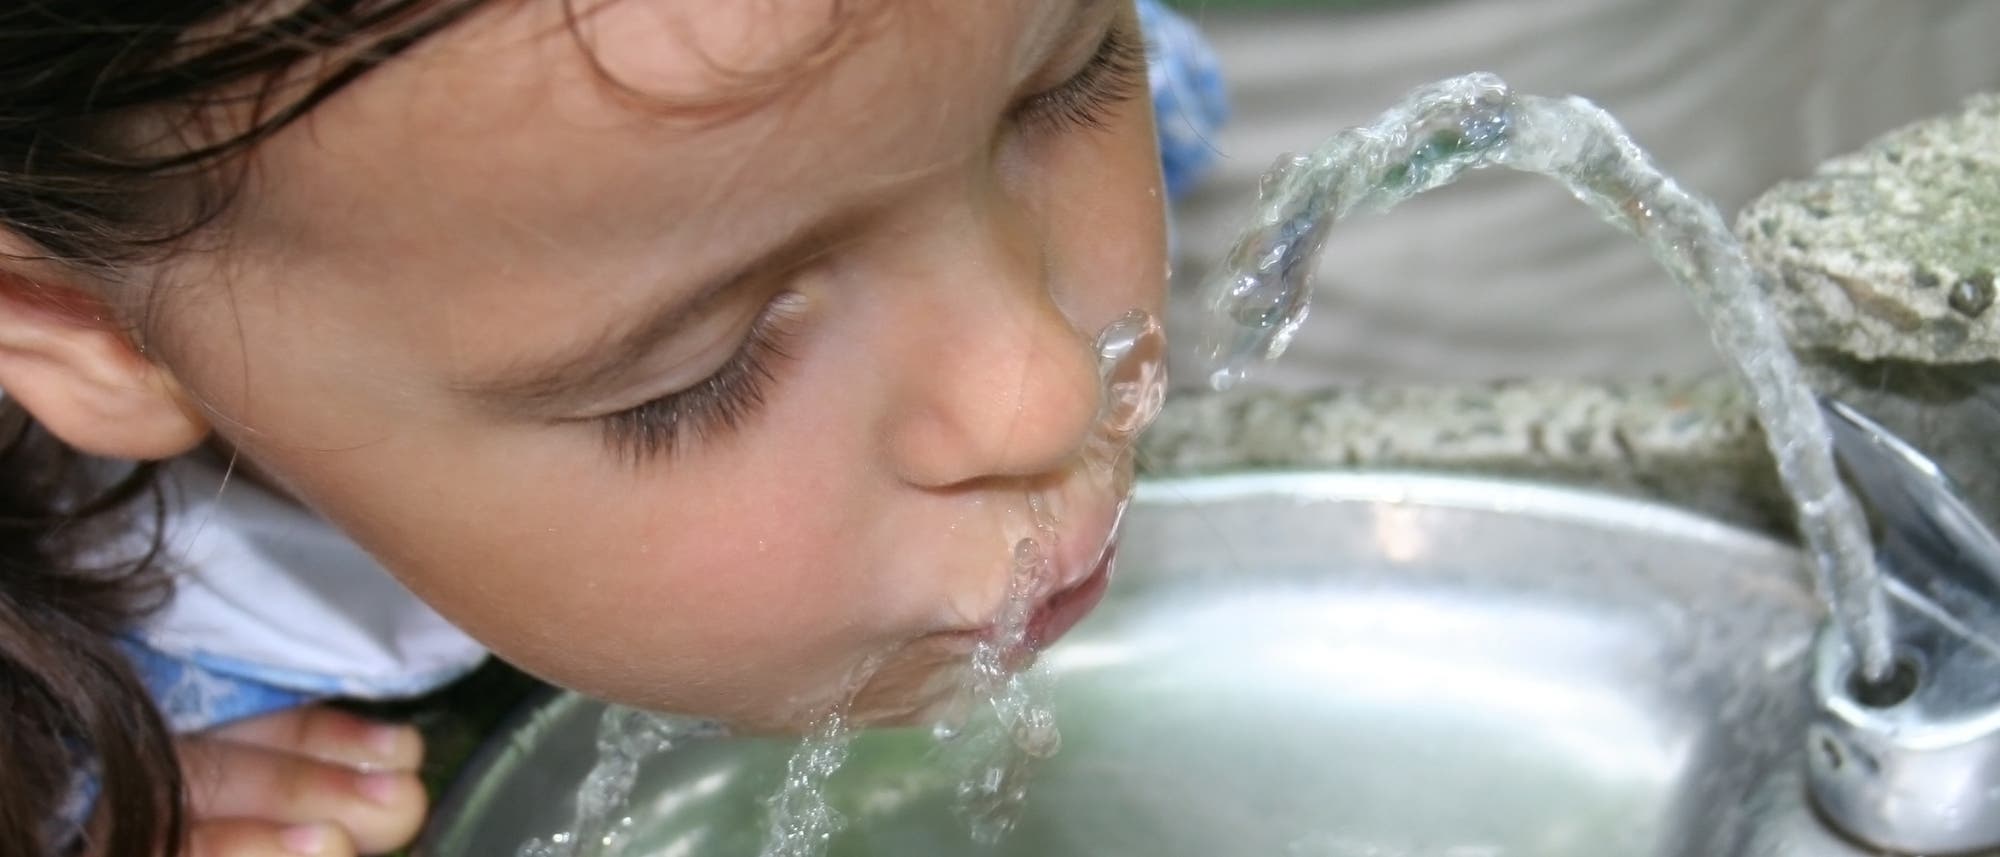 Mädchen trinkt aus einem anscheinend öffentlichen Trinkwasserbrunnen. Ob Eltern heutzutage so was noch erlauben würden?